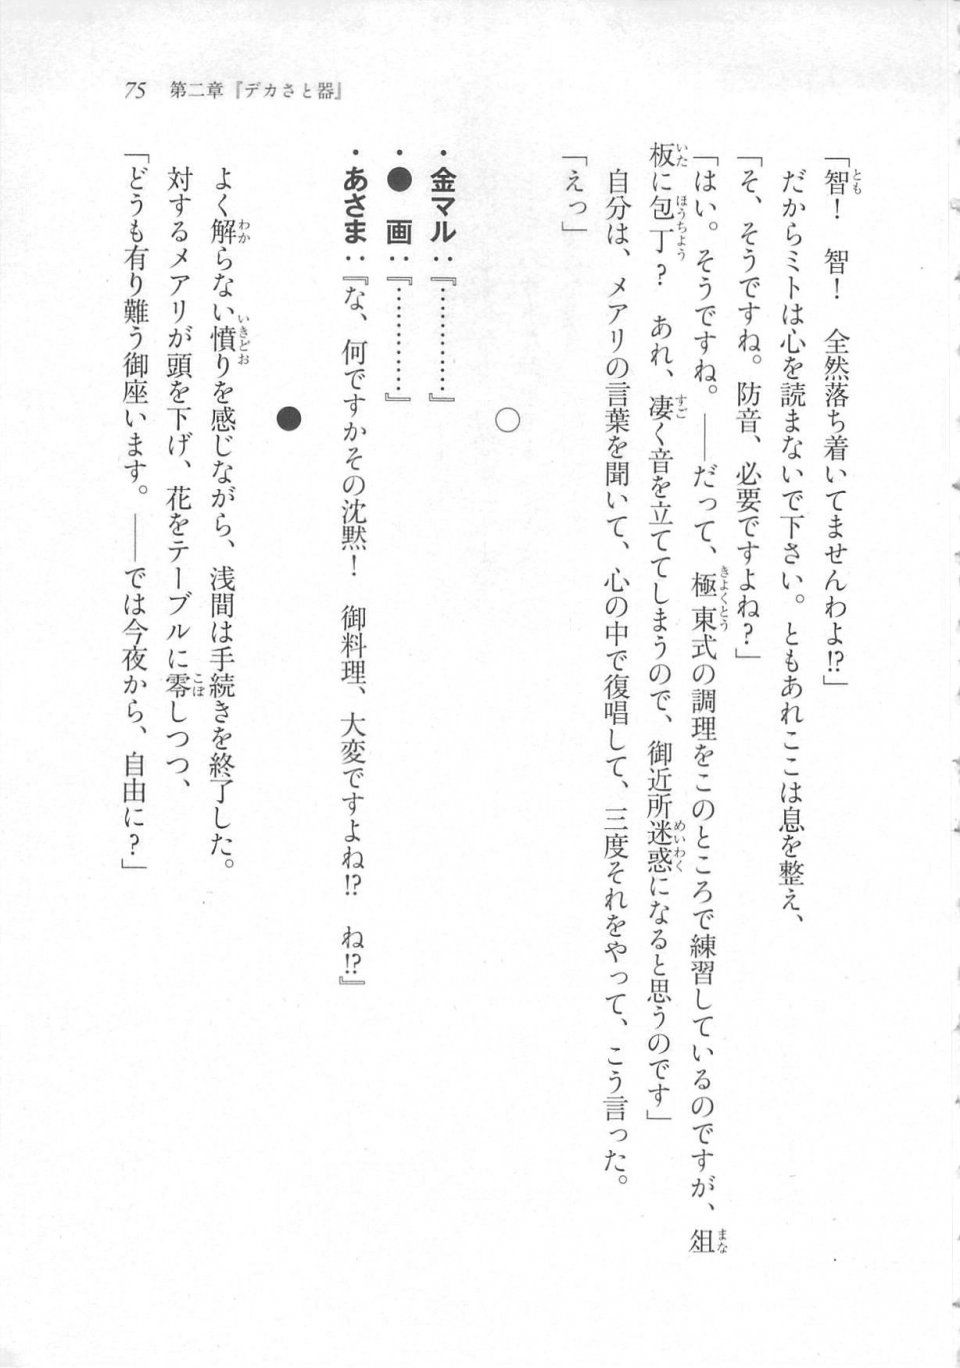 Kyoukai Senjou no Horizon LN Sidestory Vol 3 - Photo #79